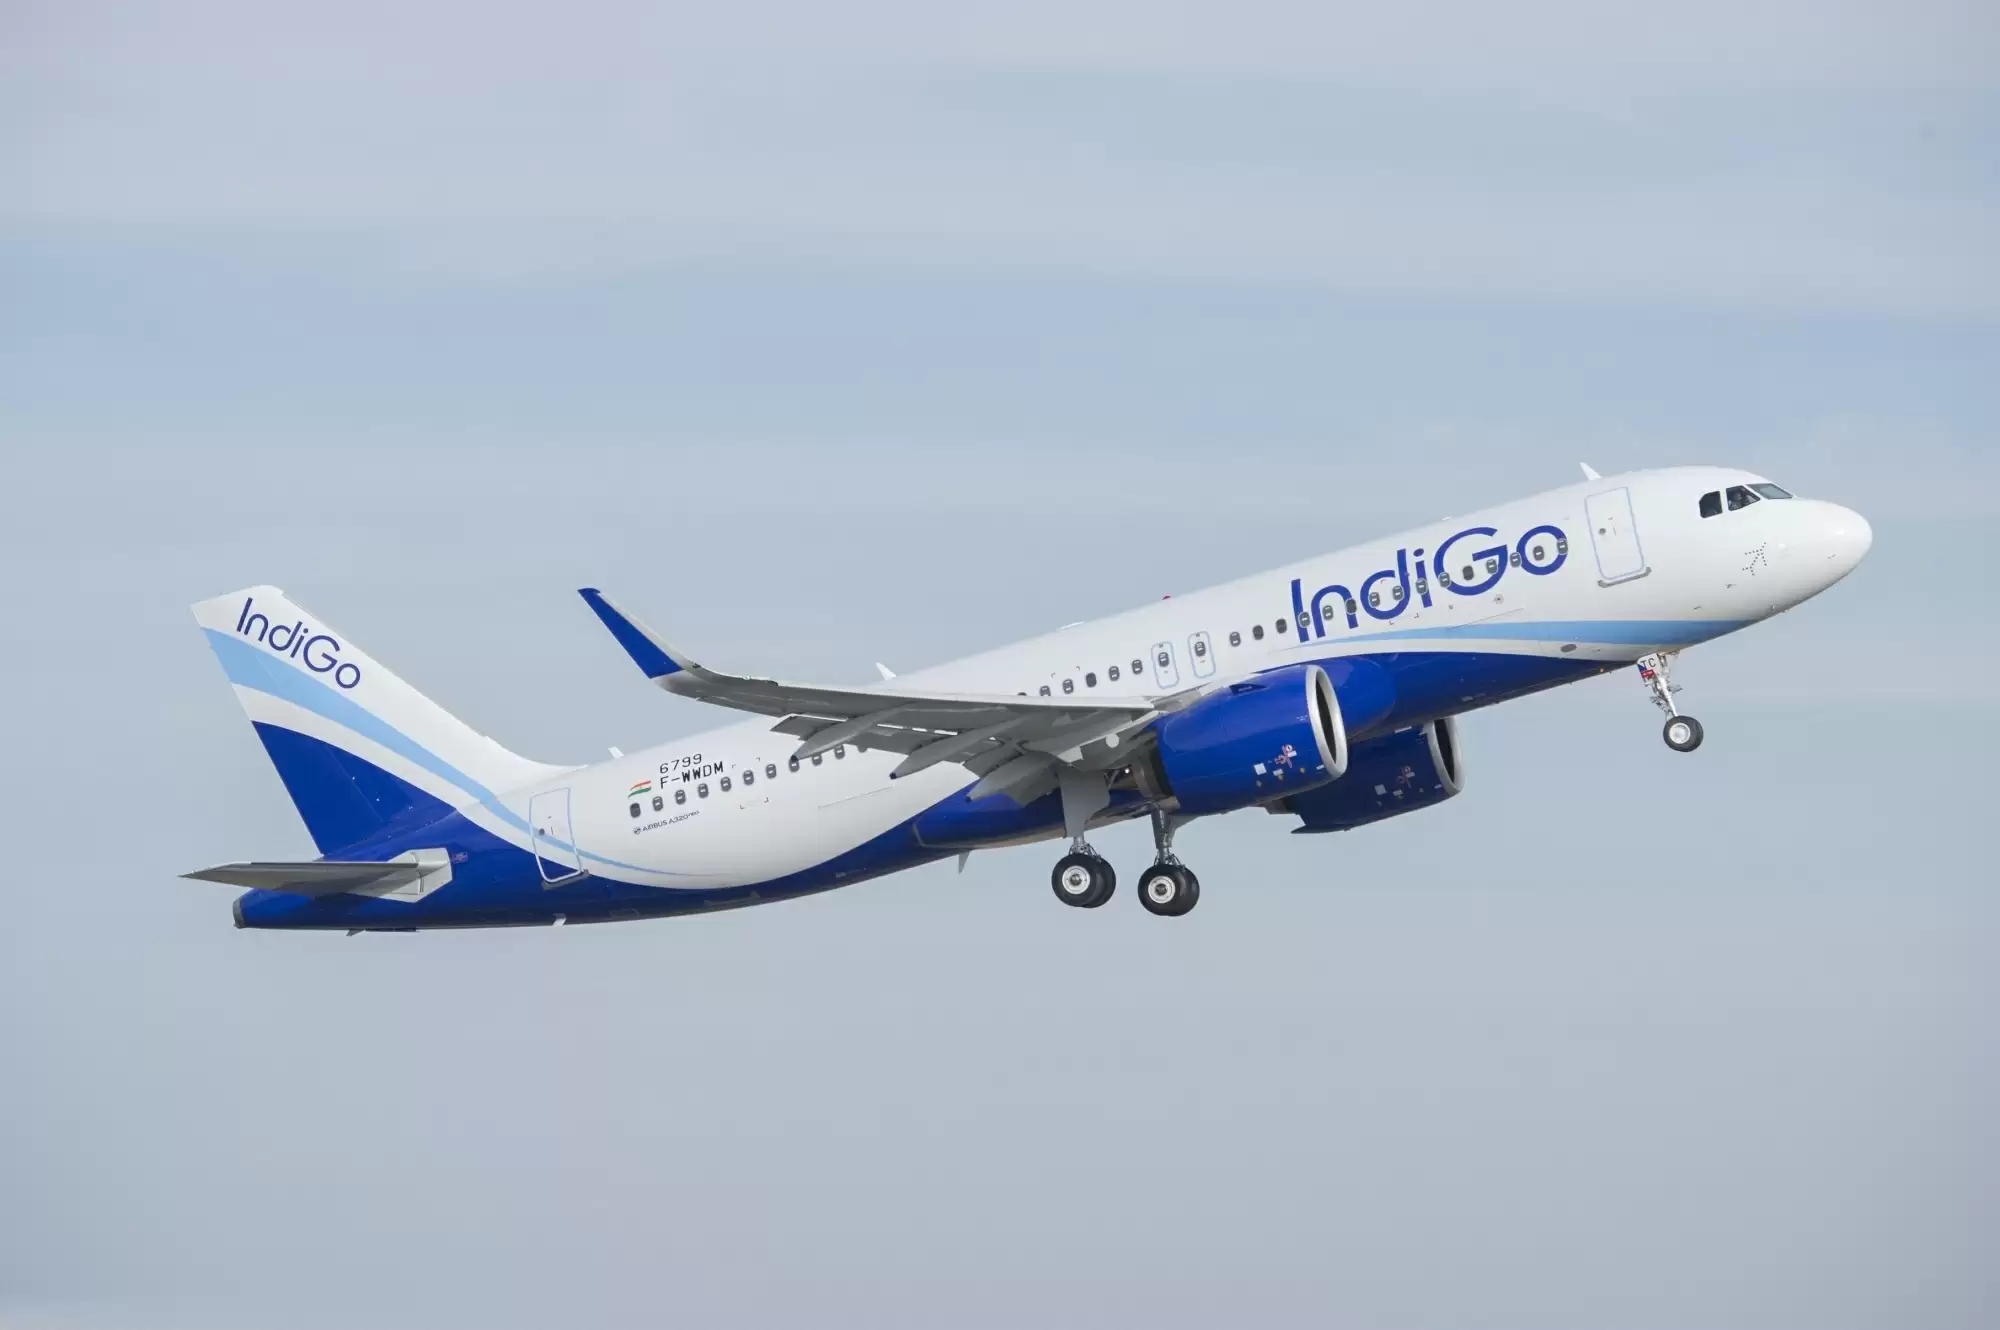 मेंगलुरु एयरपोर्ट पर उड़ान भरते समय पक्षी से टकराया विमान, सभी यात्री सुरक्षित